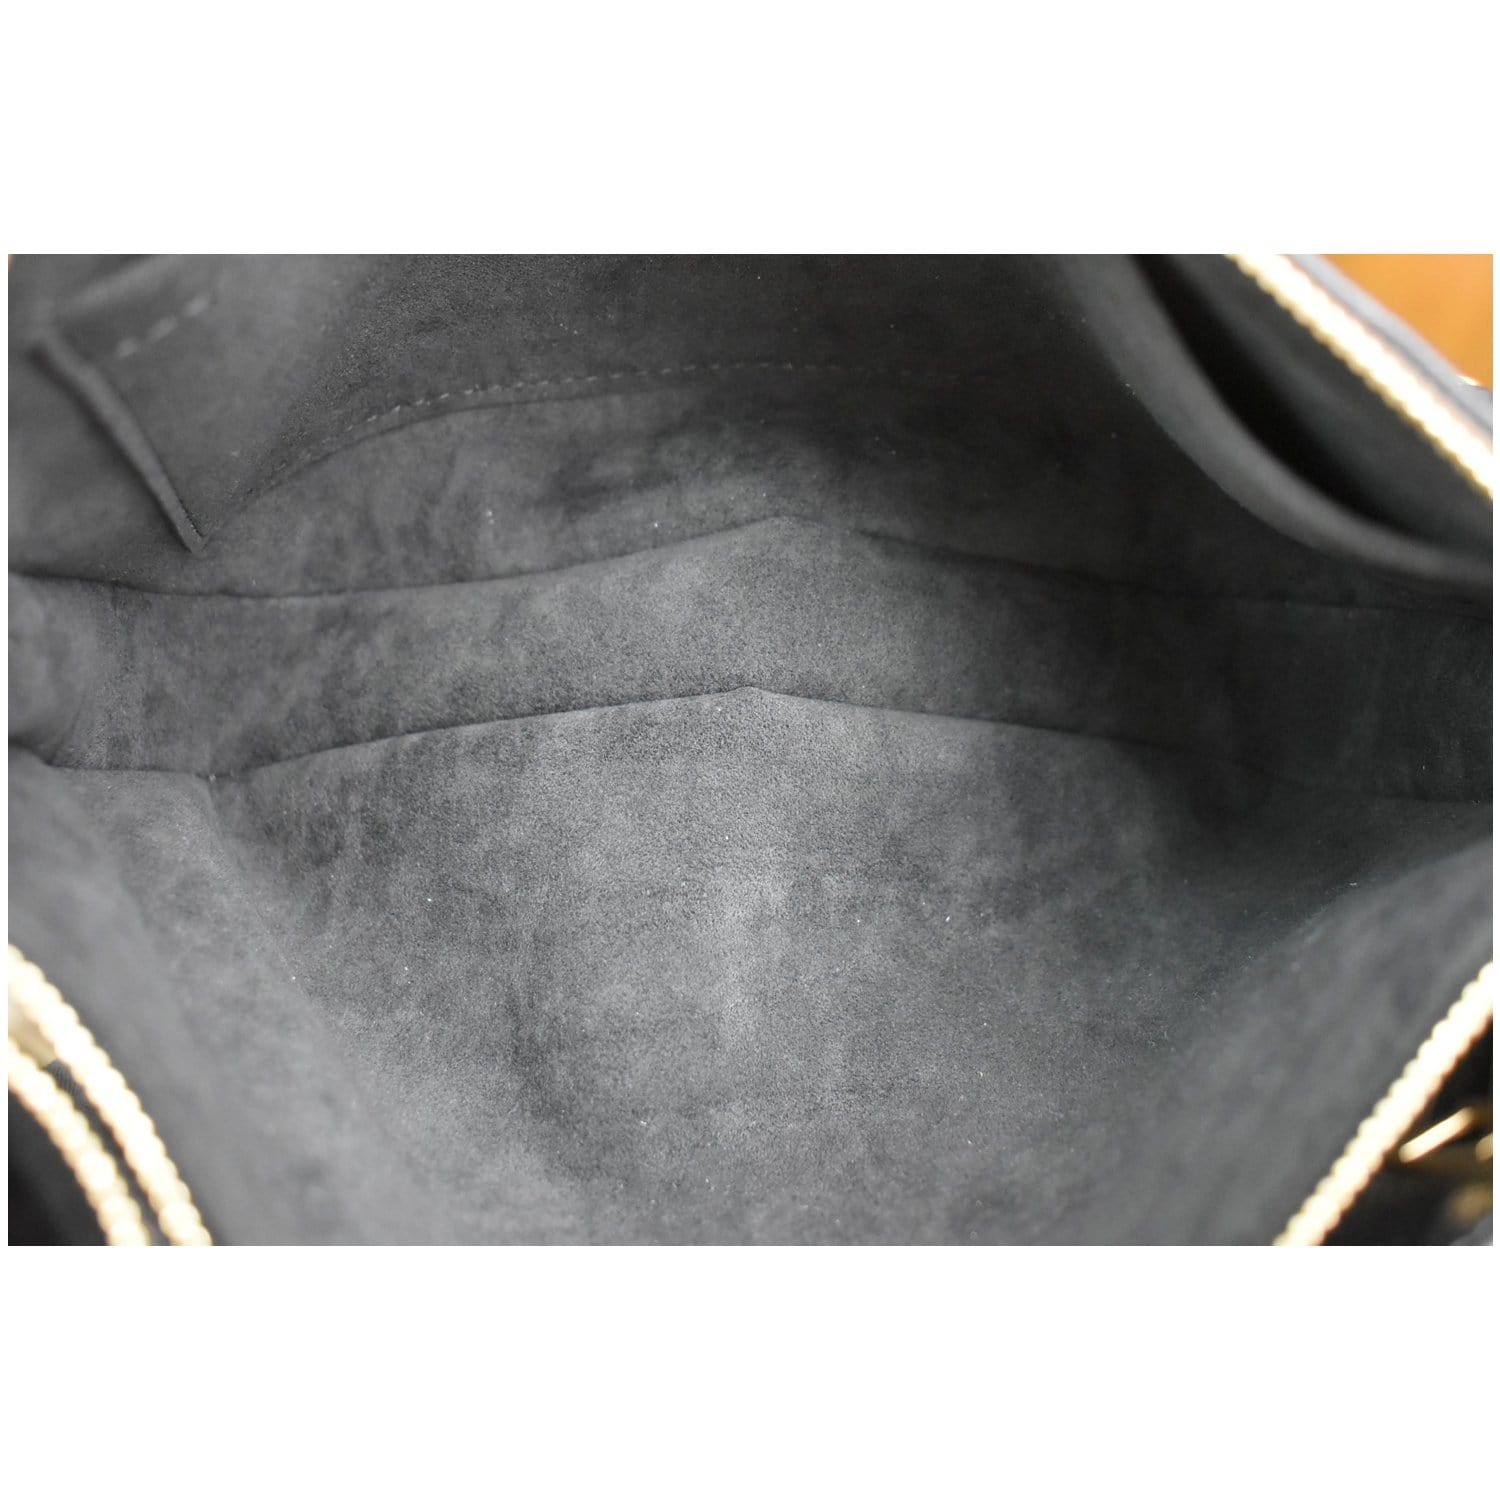 LOUIS VUITTON POCHETTE Empreinte Beige Leather Clutch Crossbody Bag fr –  Debsluxurycloset